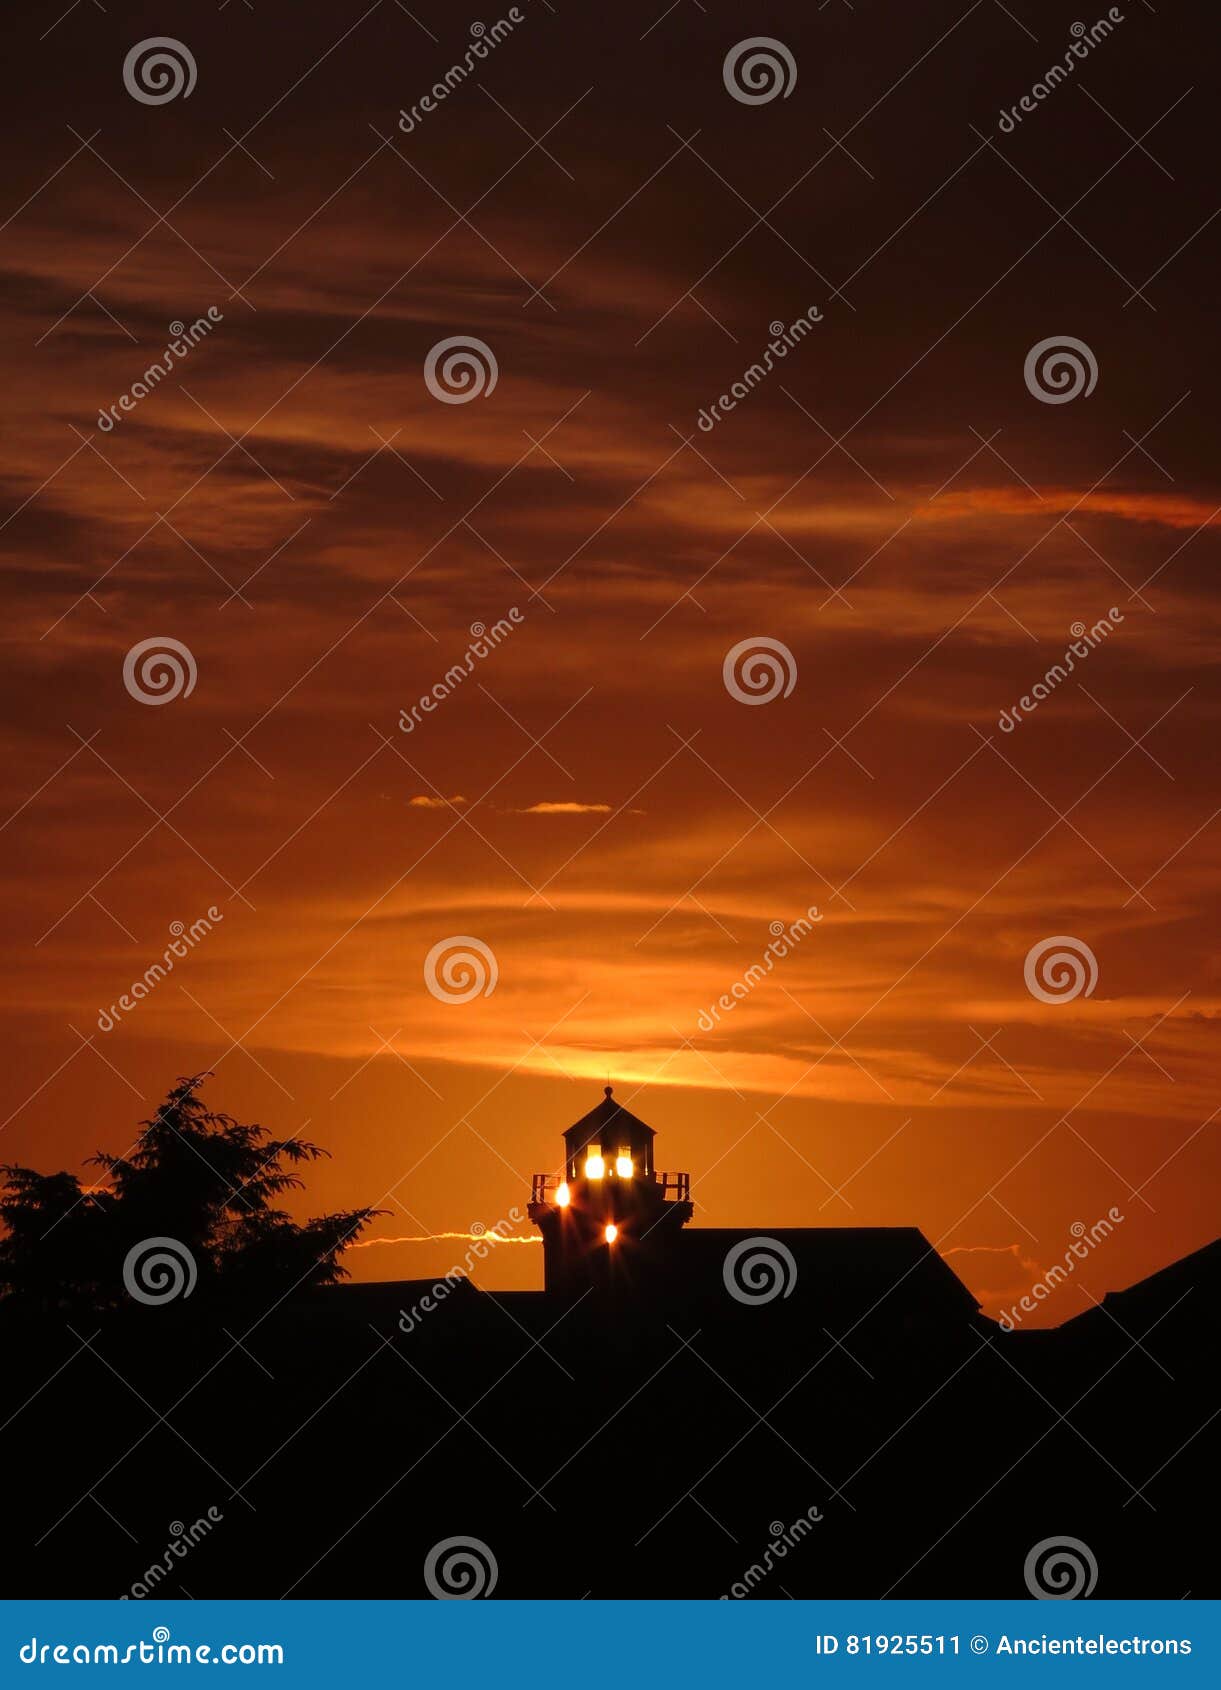 historical wawona lighthouse at sunset